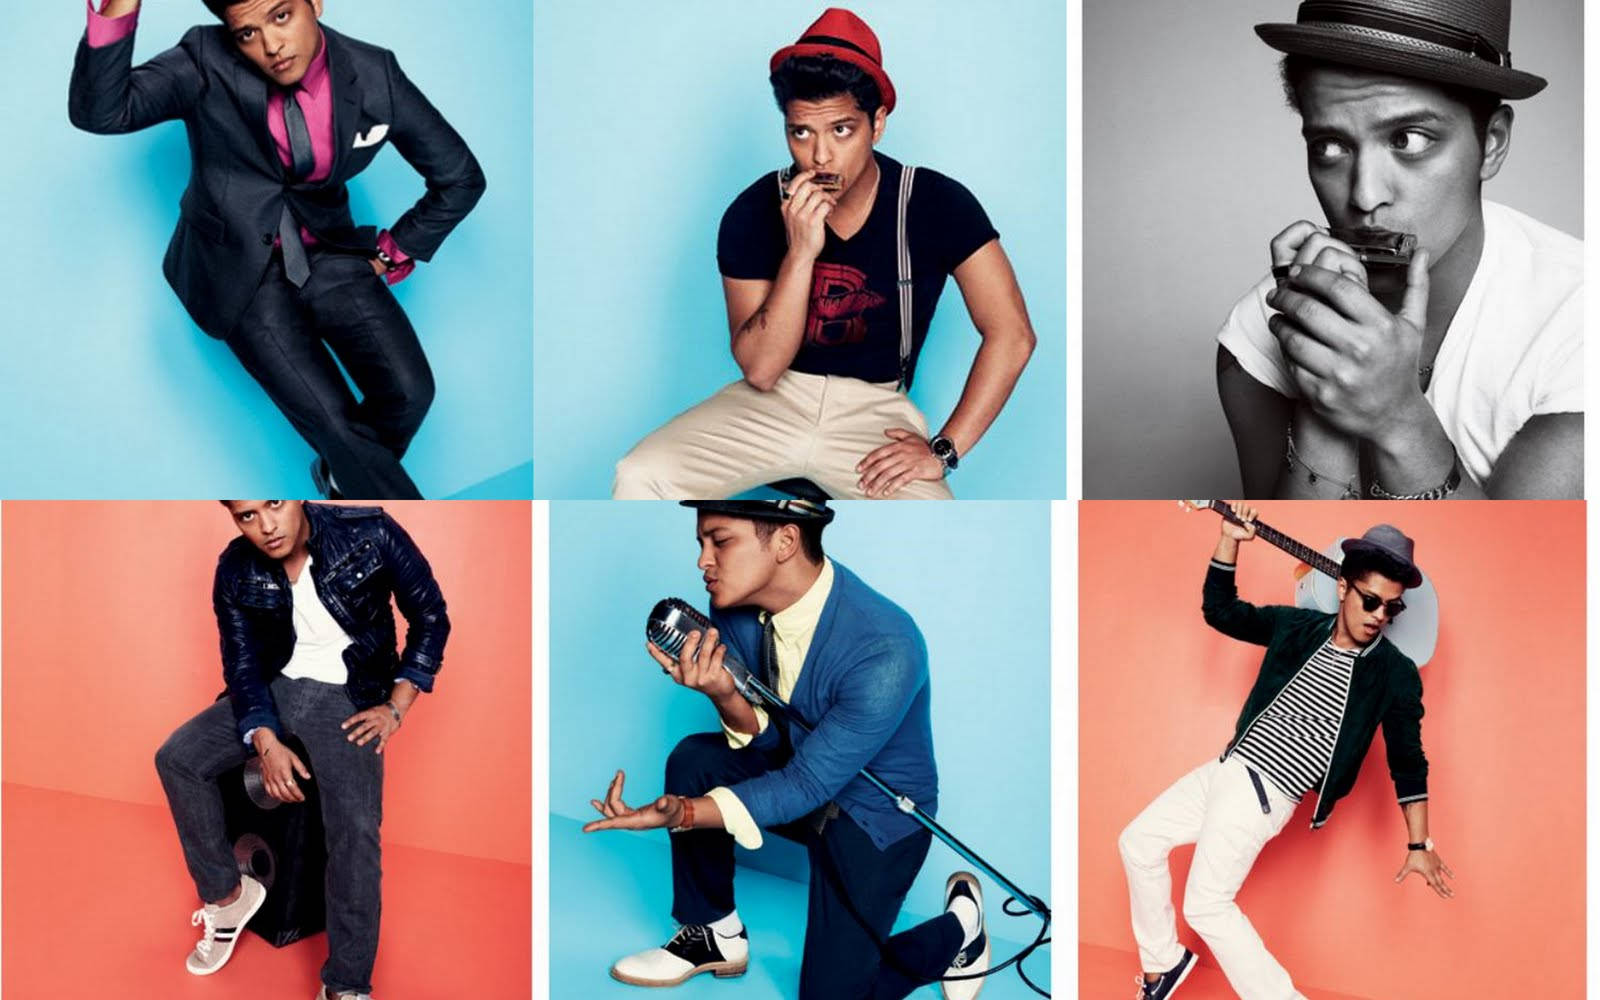 Grammy Award Winning Artist Bruno Mars Background